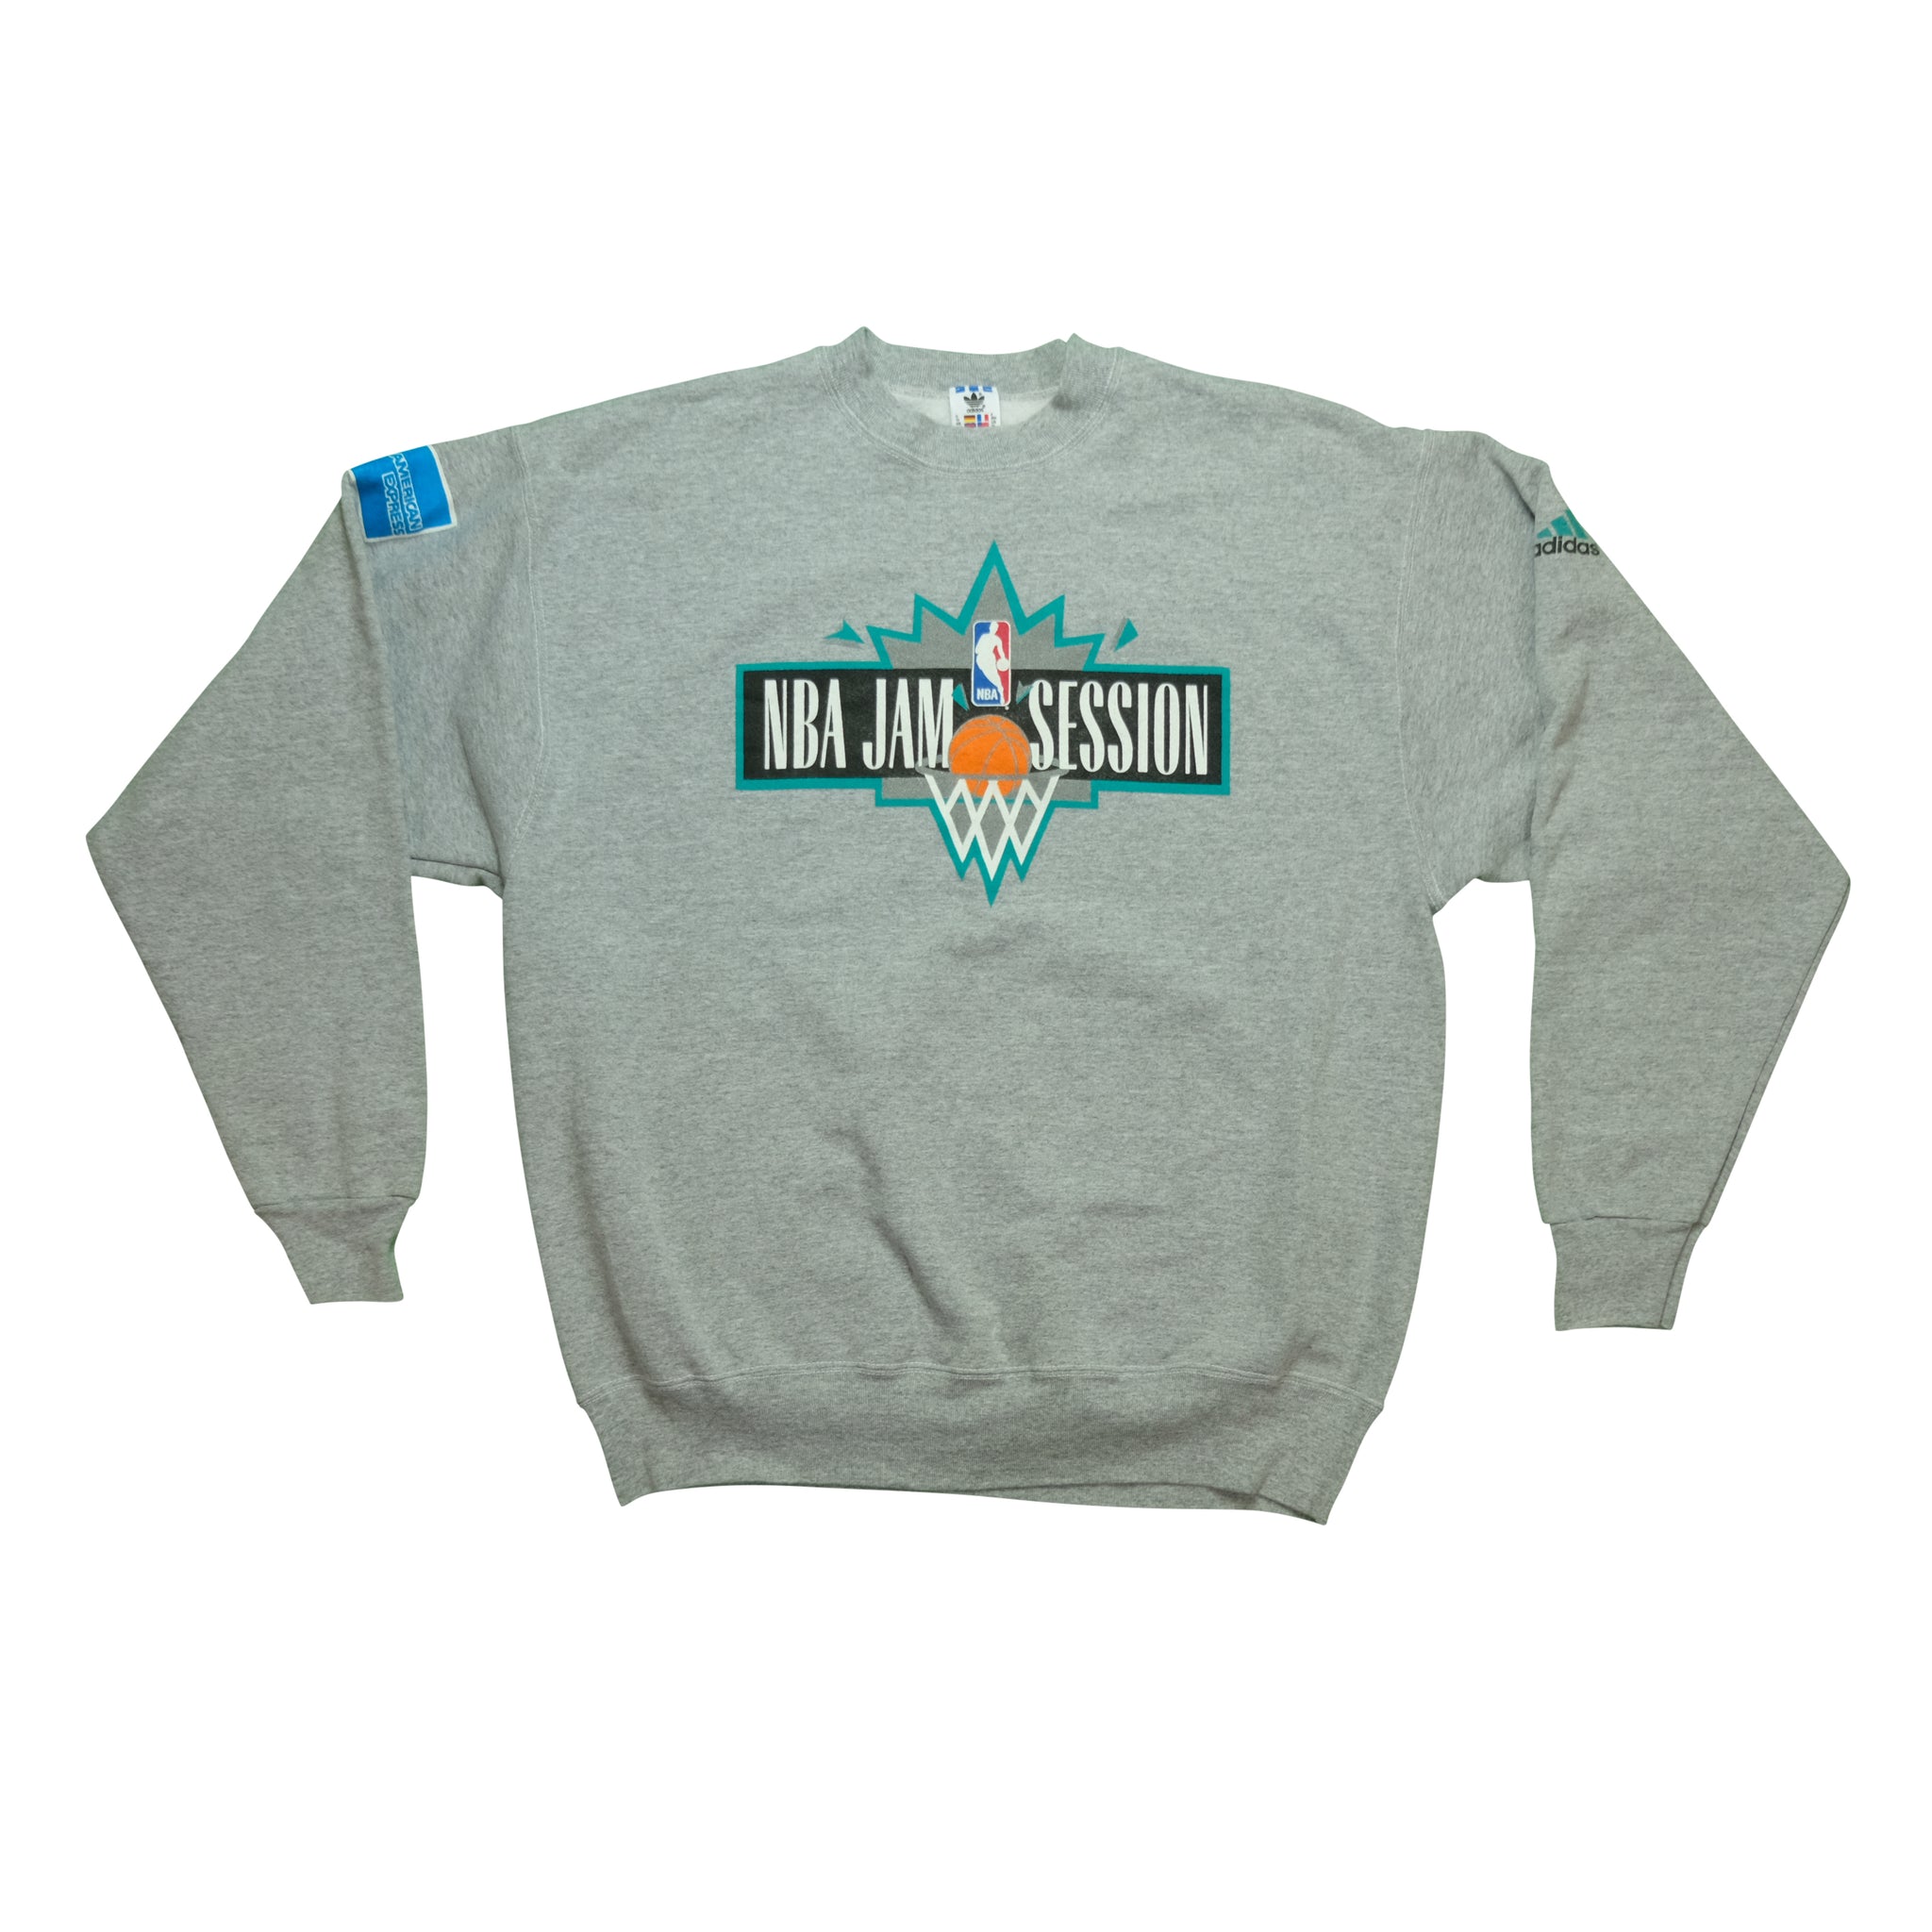 Vintage Adidas NBA Jam Session Sweatshirt | Reset Vintage Shirts